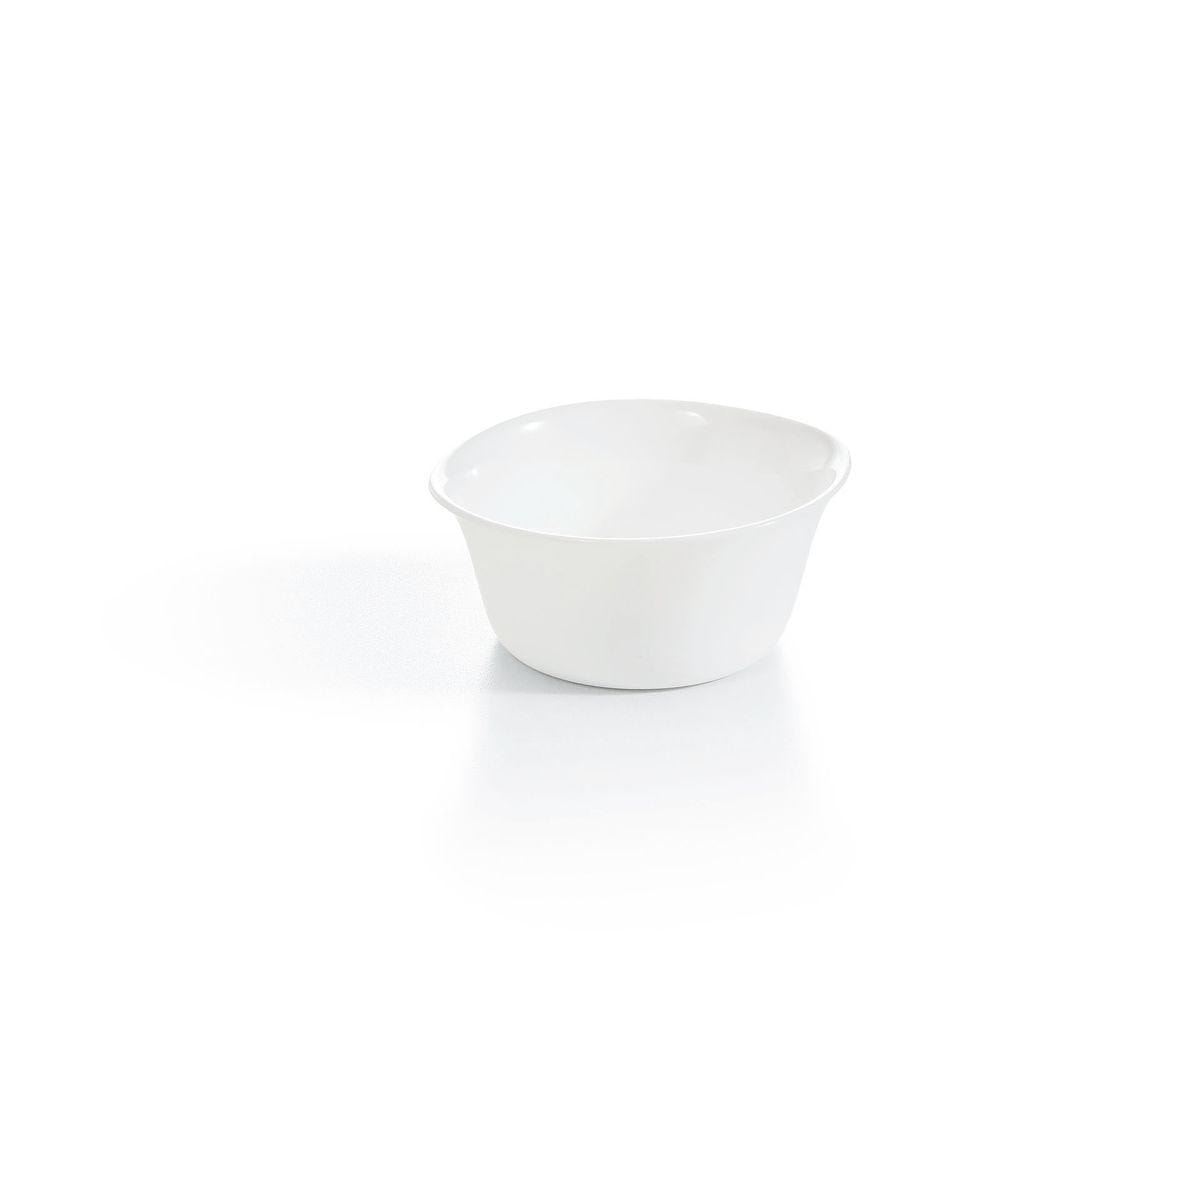 Ramequin blanc 11cm Smart Cuisine Carine 250°C - Luminarc - Opale culinaire extra léger et résistant